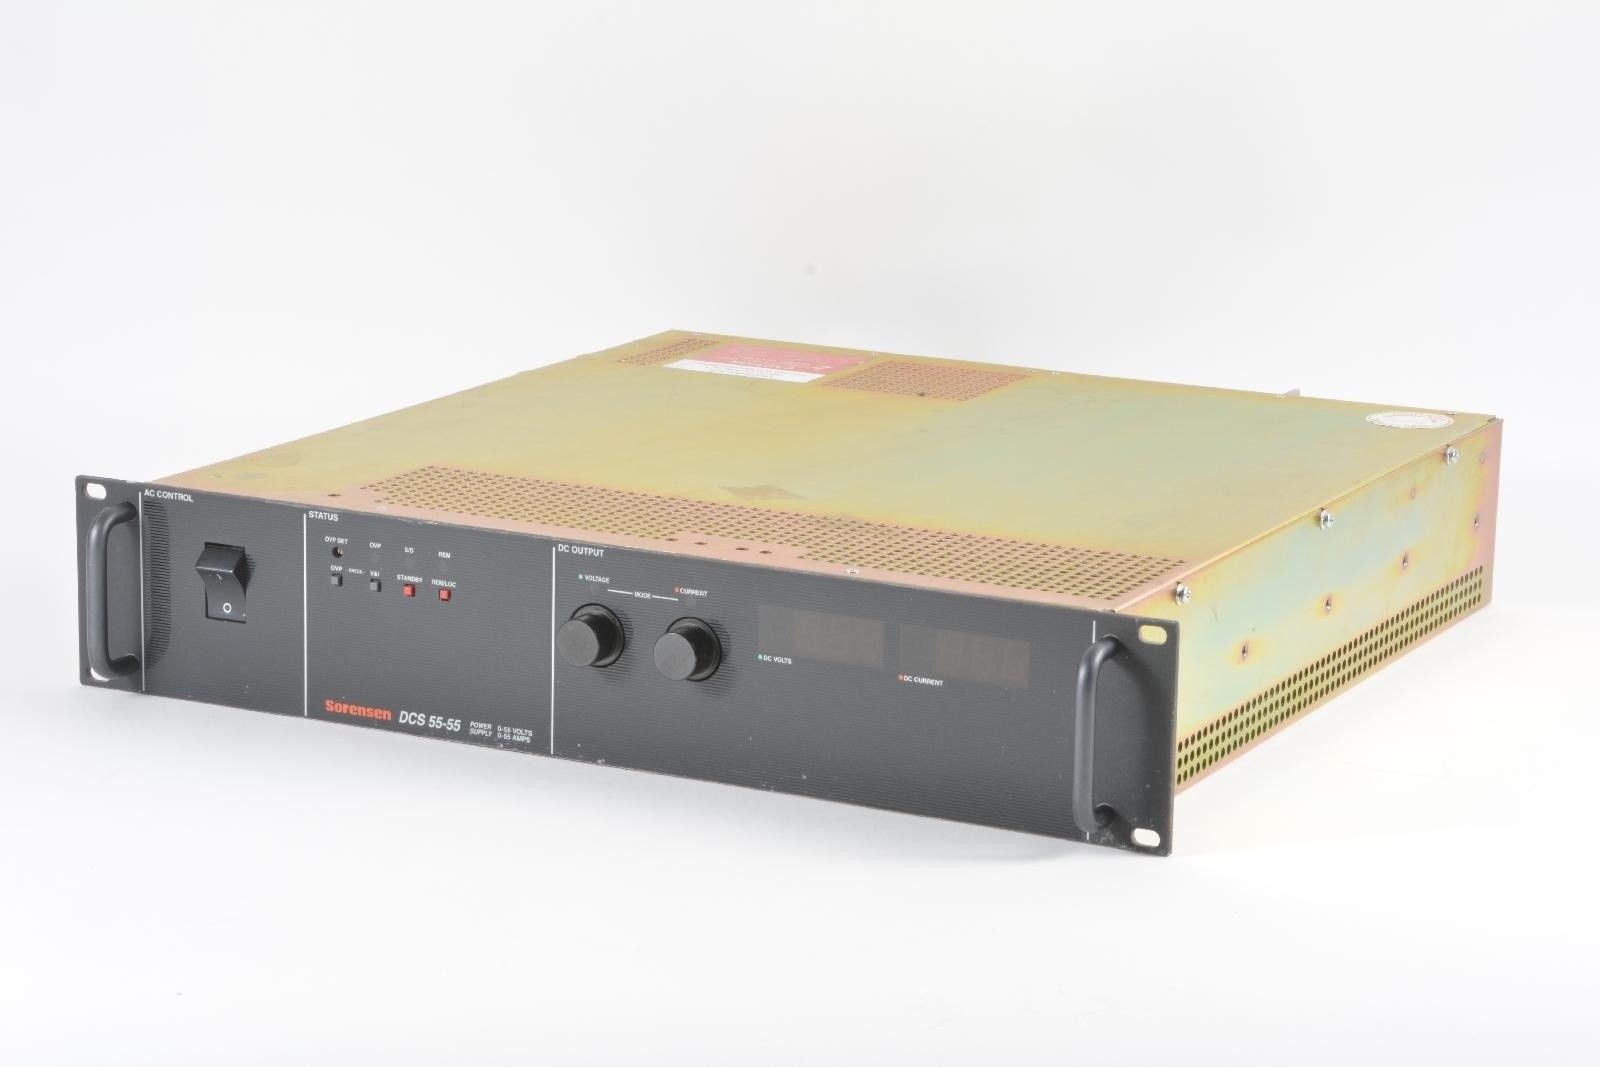 sorensen-dcs55-55-0-55v-0-55a-rackmount-programmable-dc-power-supply-used-equipment-0.jpg